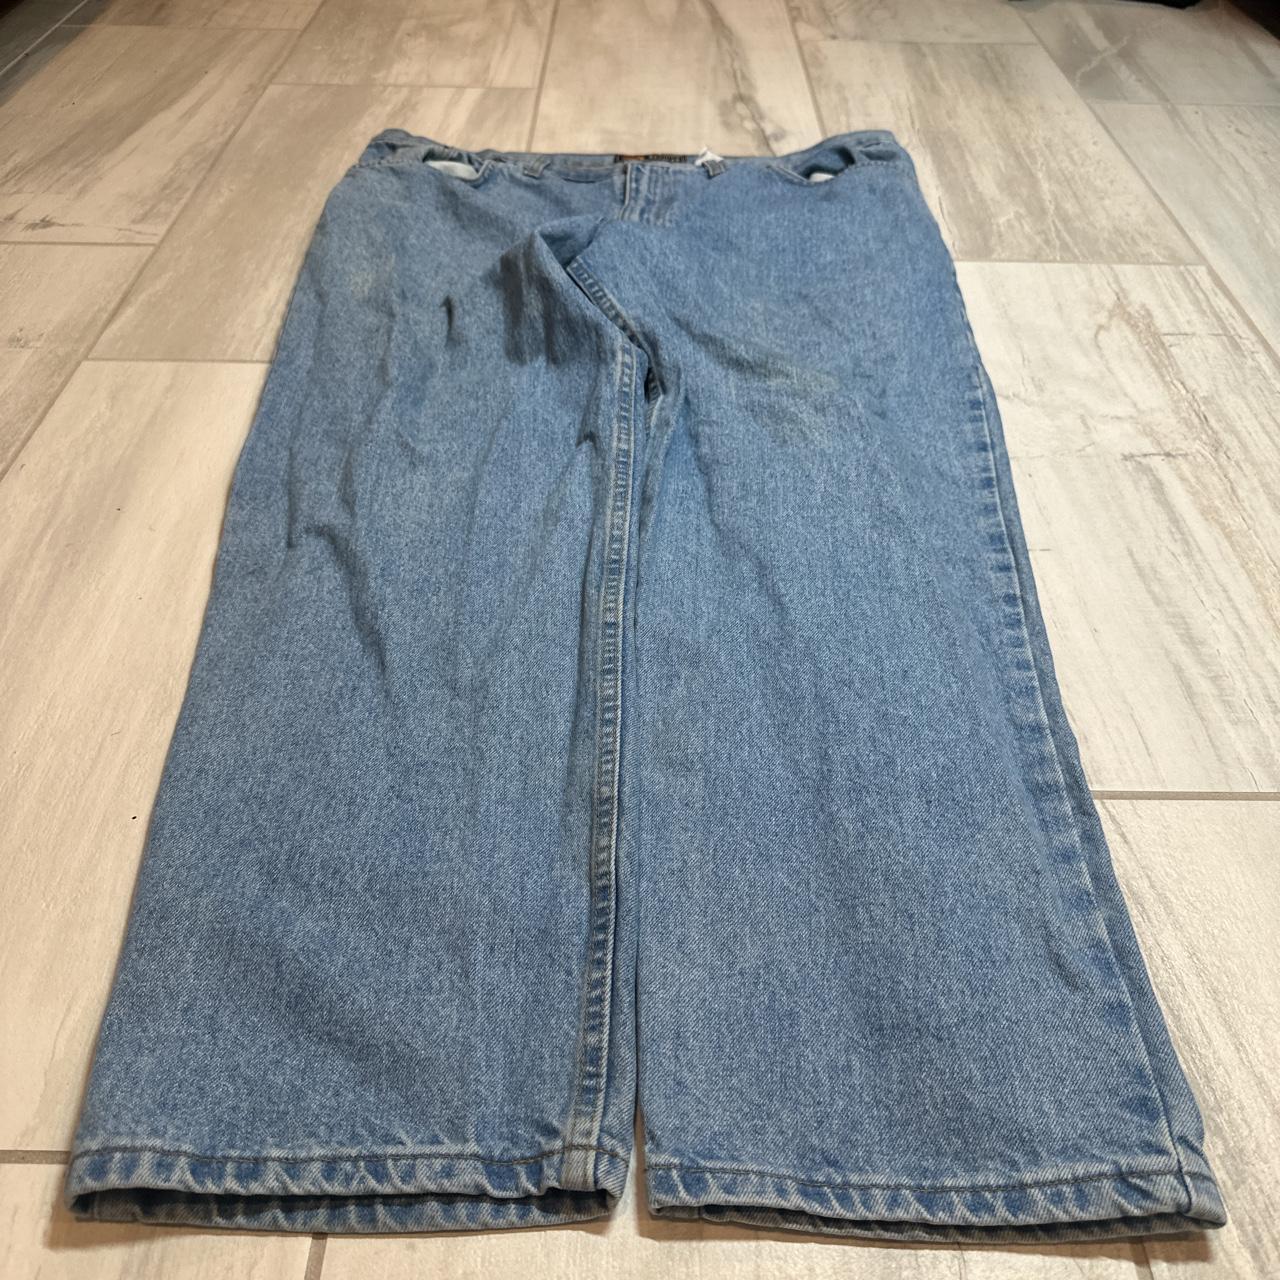 Vintage baggy skater jeans Size 40 waist Inseam 28... - Depop